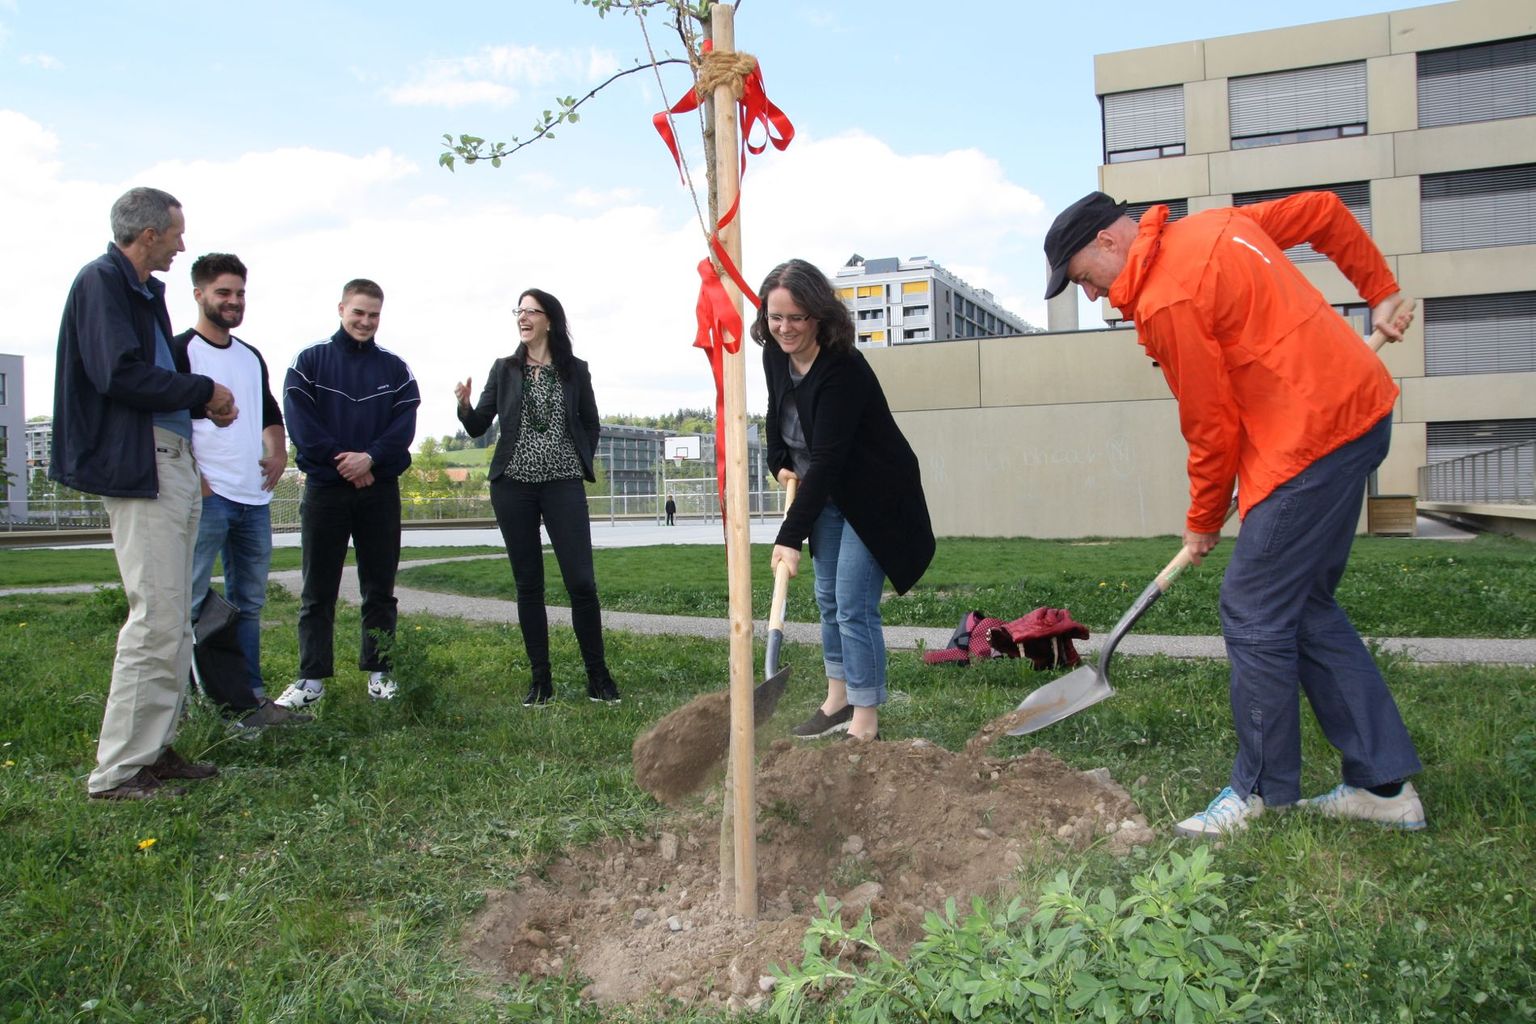 Baumpflanzaktion: Anlässlich des Jubiläums pflanzte das ProClim-Team im Brünnengut Bern einen jungen Apfelbaum.